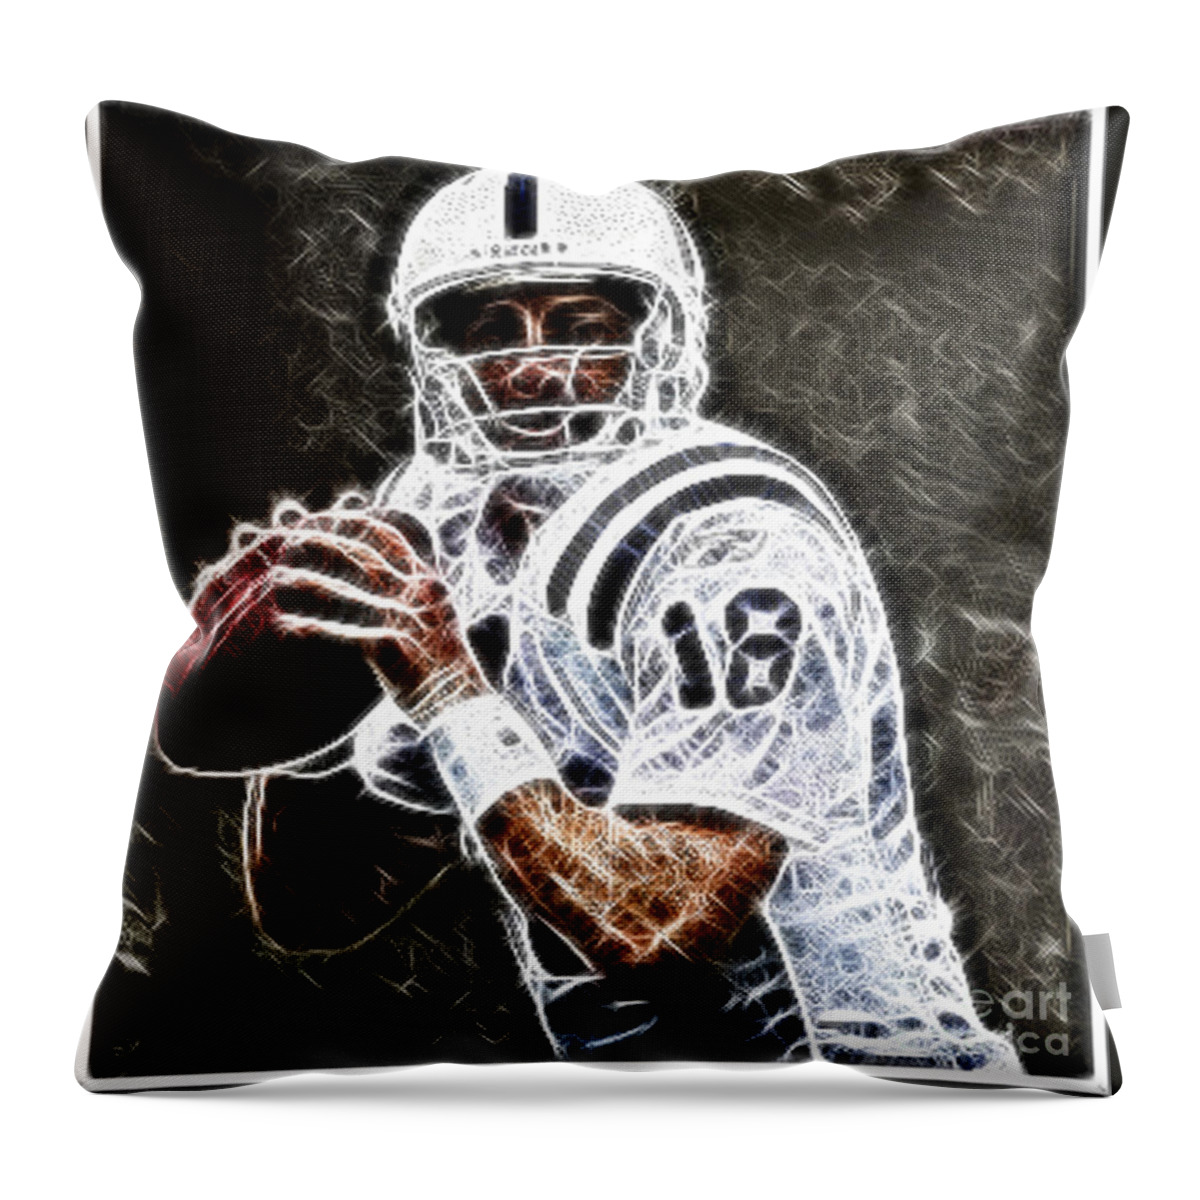 Peyton Manning Throw Pillow featuring the digital art Peyton Manning 18 by Paul Ward